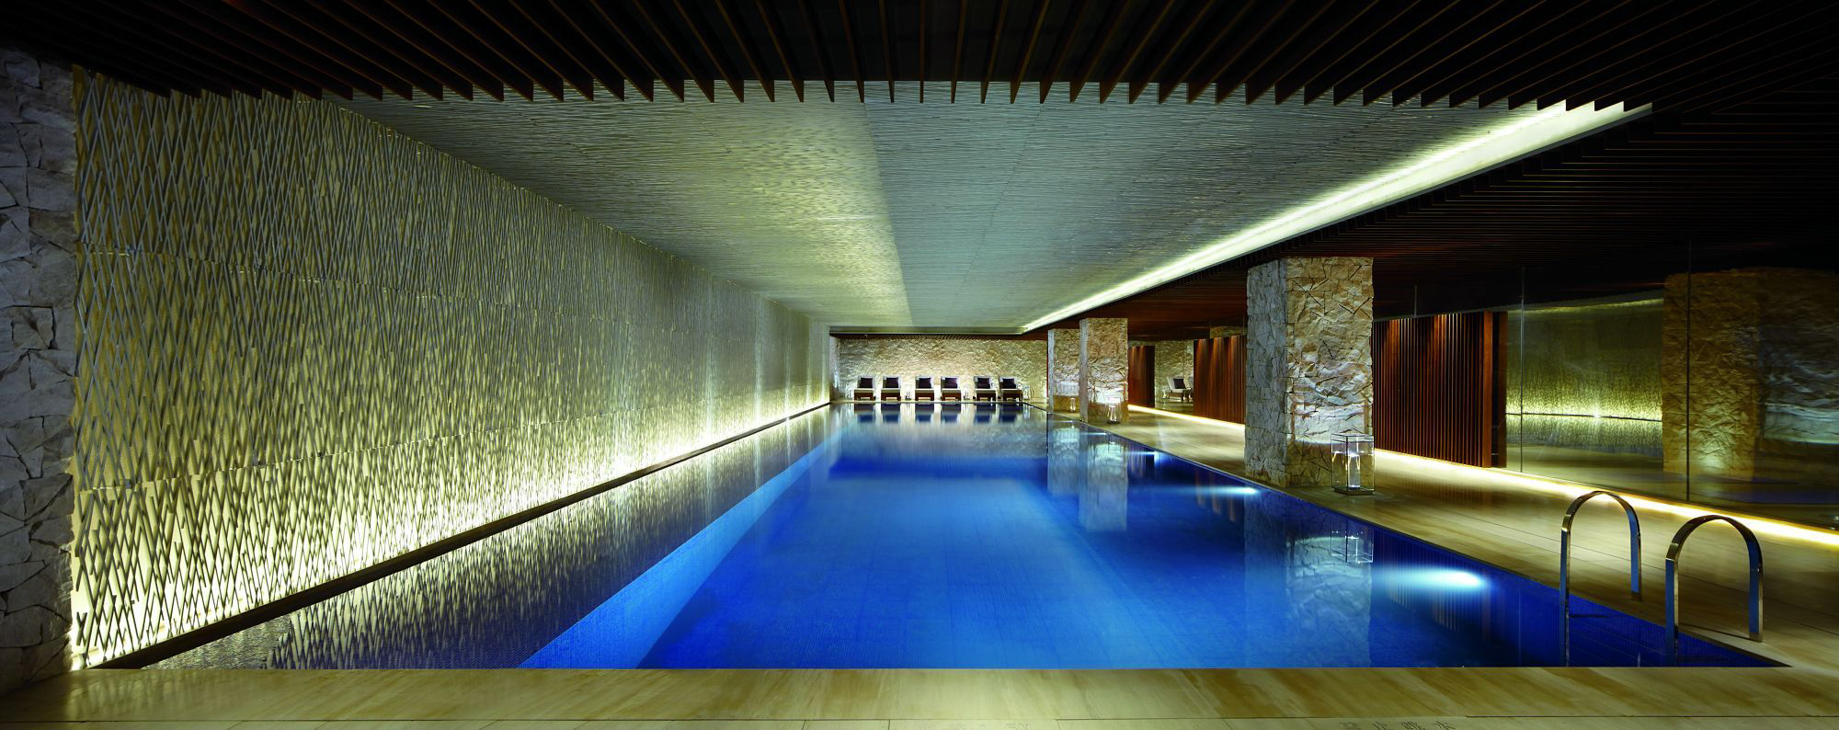 The Ritz-Carlton, Tianjin Hotel – Tianjin, China – Pool